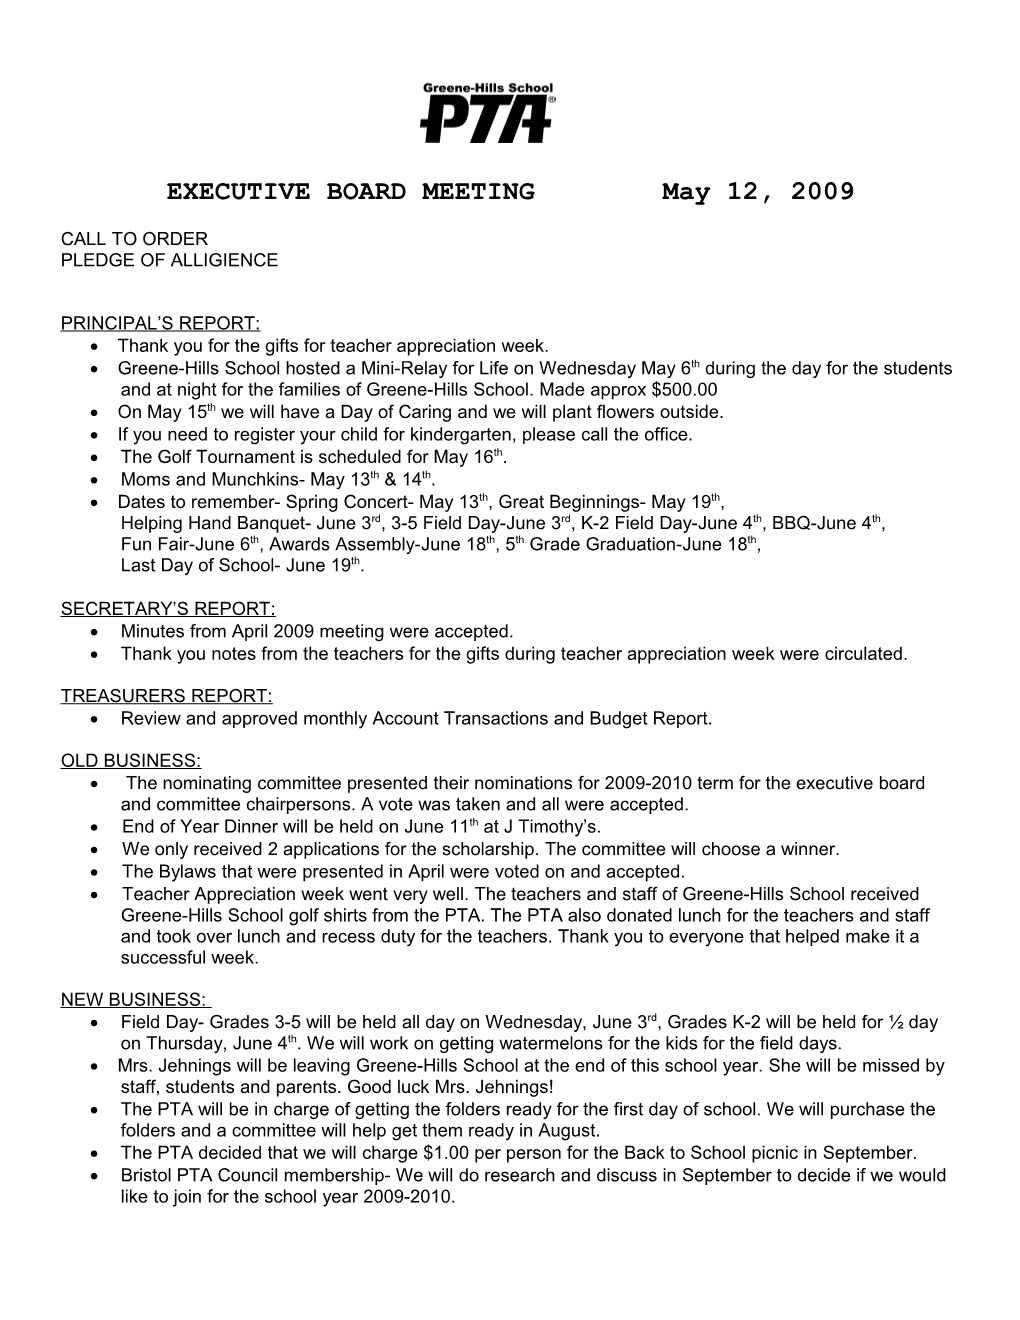 EXECUTIVE BOARD MEETING May 12, 2009